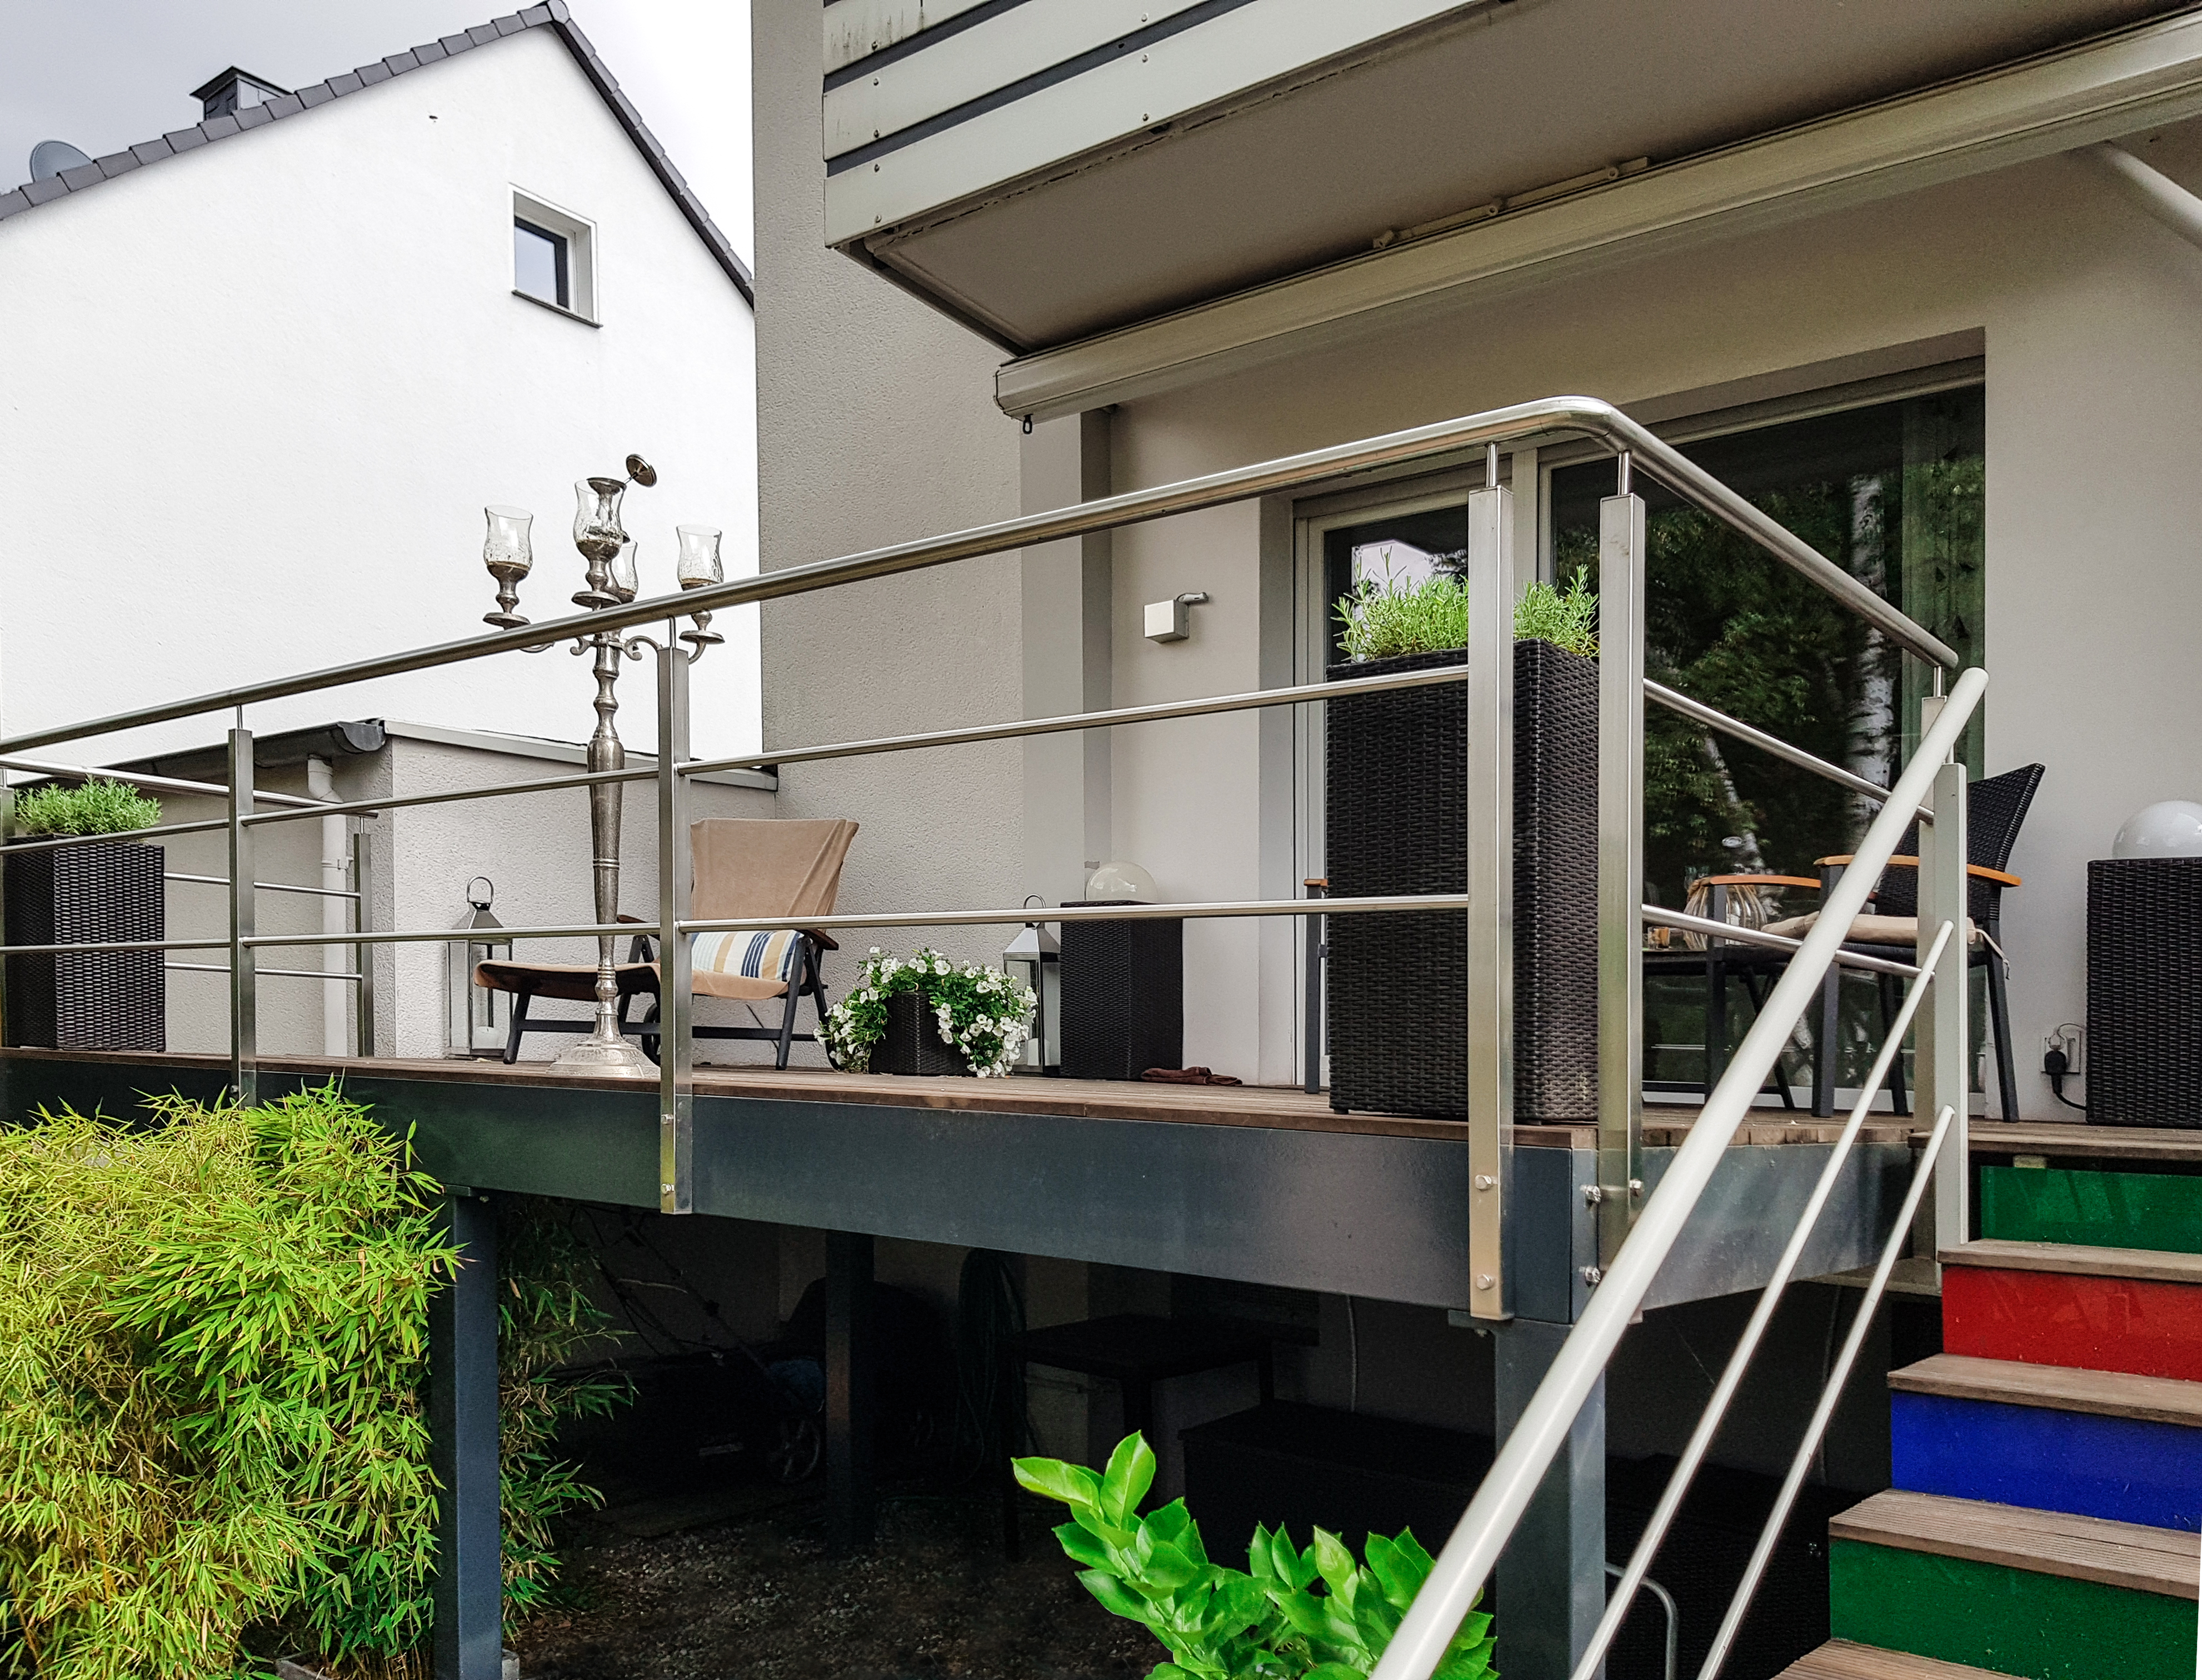 Edelstahlschlosserei Nappenfeld aus Mühlheim, der Spezialist für Geländer-Konstruktionen, entwickelte und montierte einen Edelstahlaufgang an der Außentreppe dieses altehrwürdigen Hause